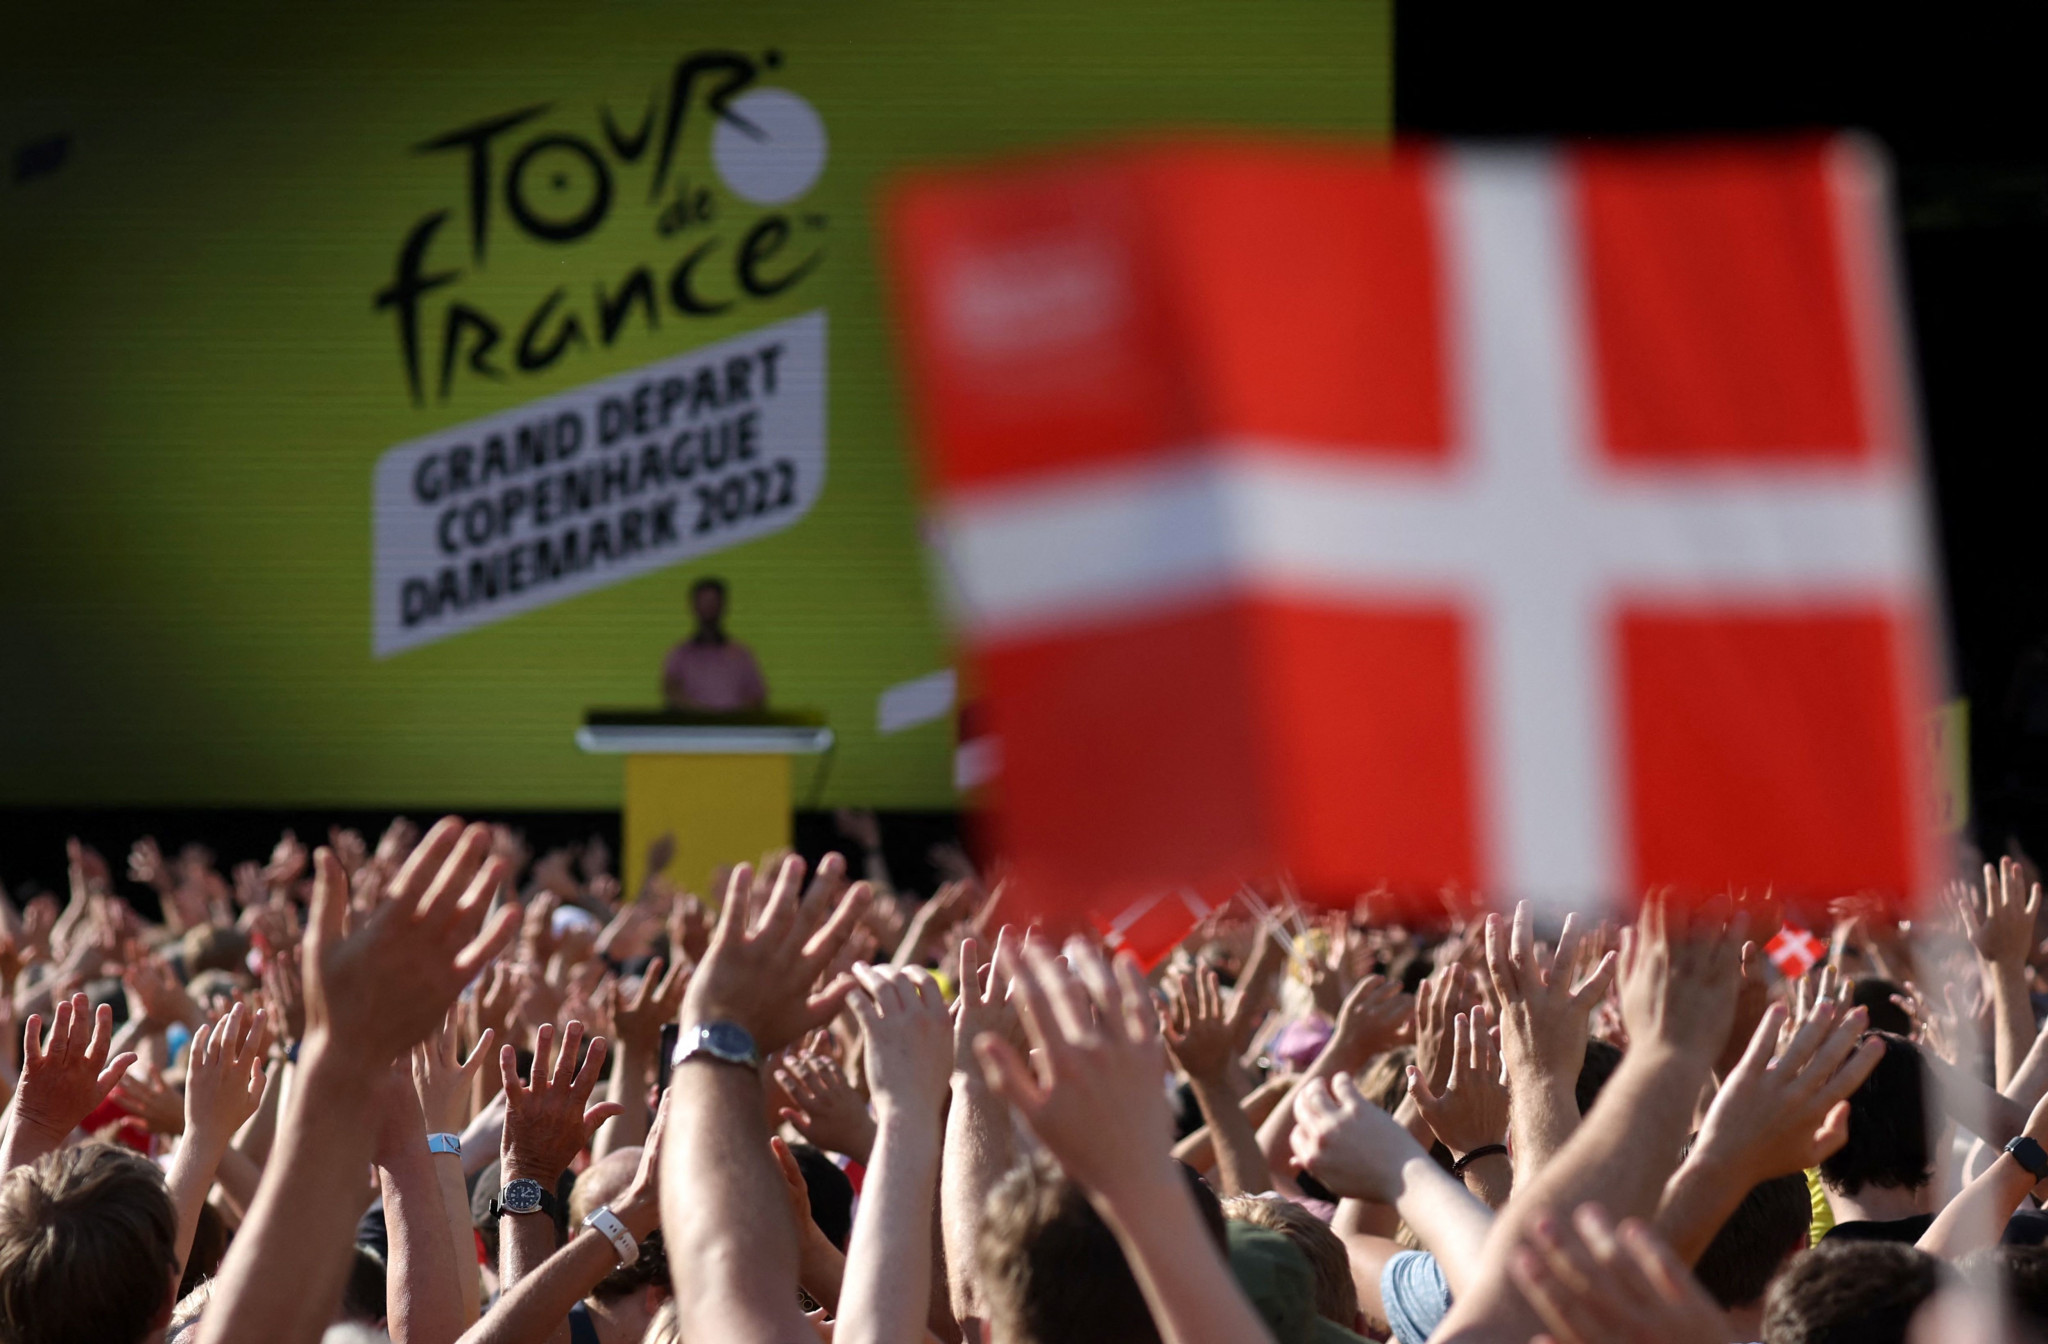 Denmark's Tour de France Grand Départ had "significant economic and social impact"